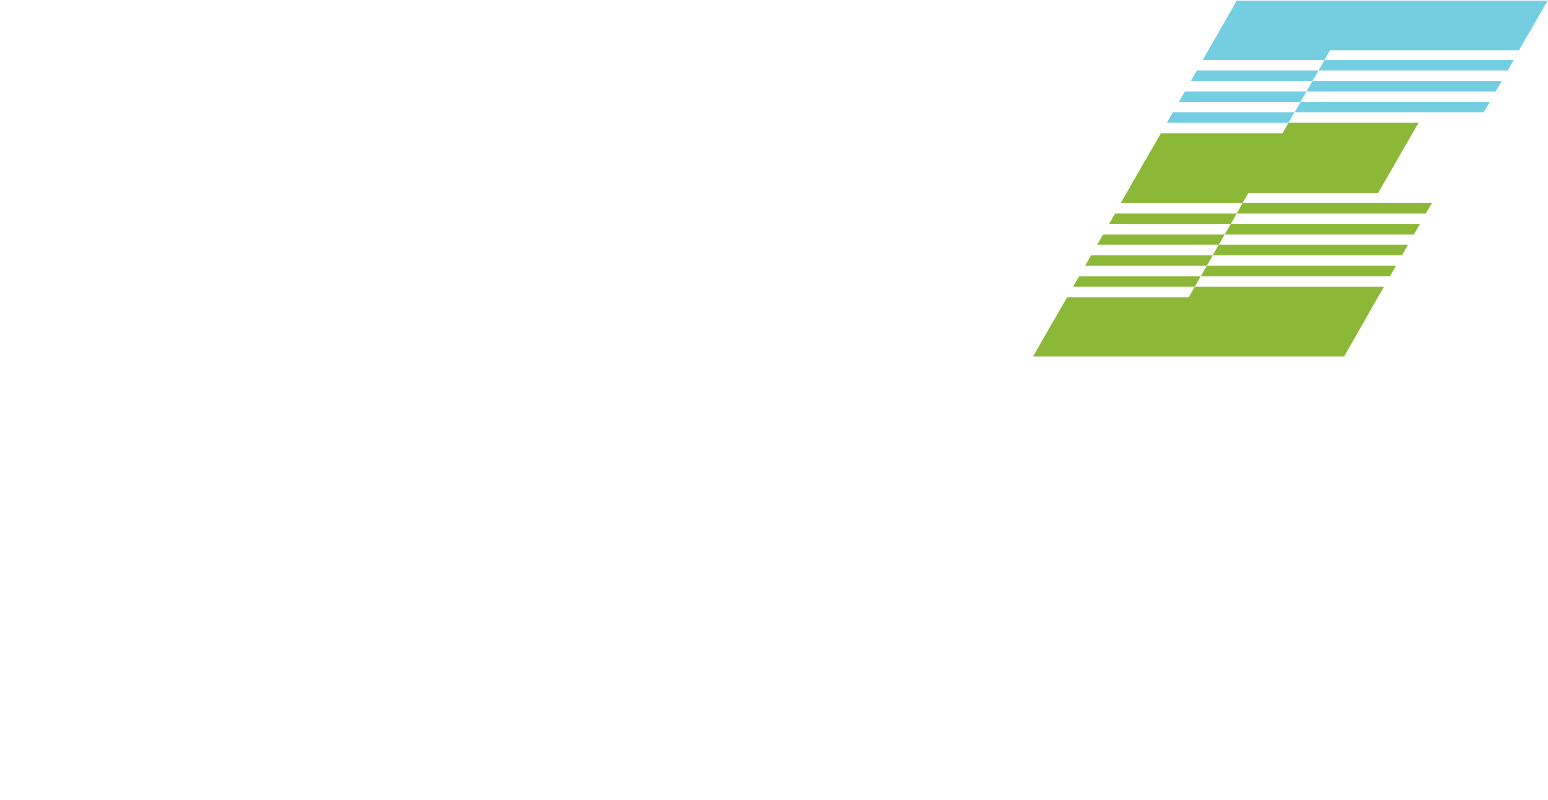 Elevate Uranium logo large for dark backgrounds (transparent PNG)